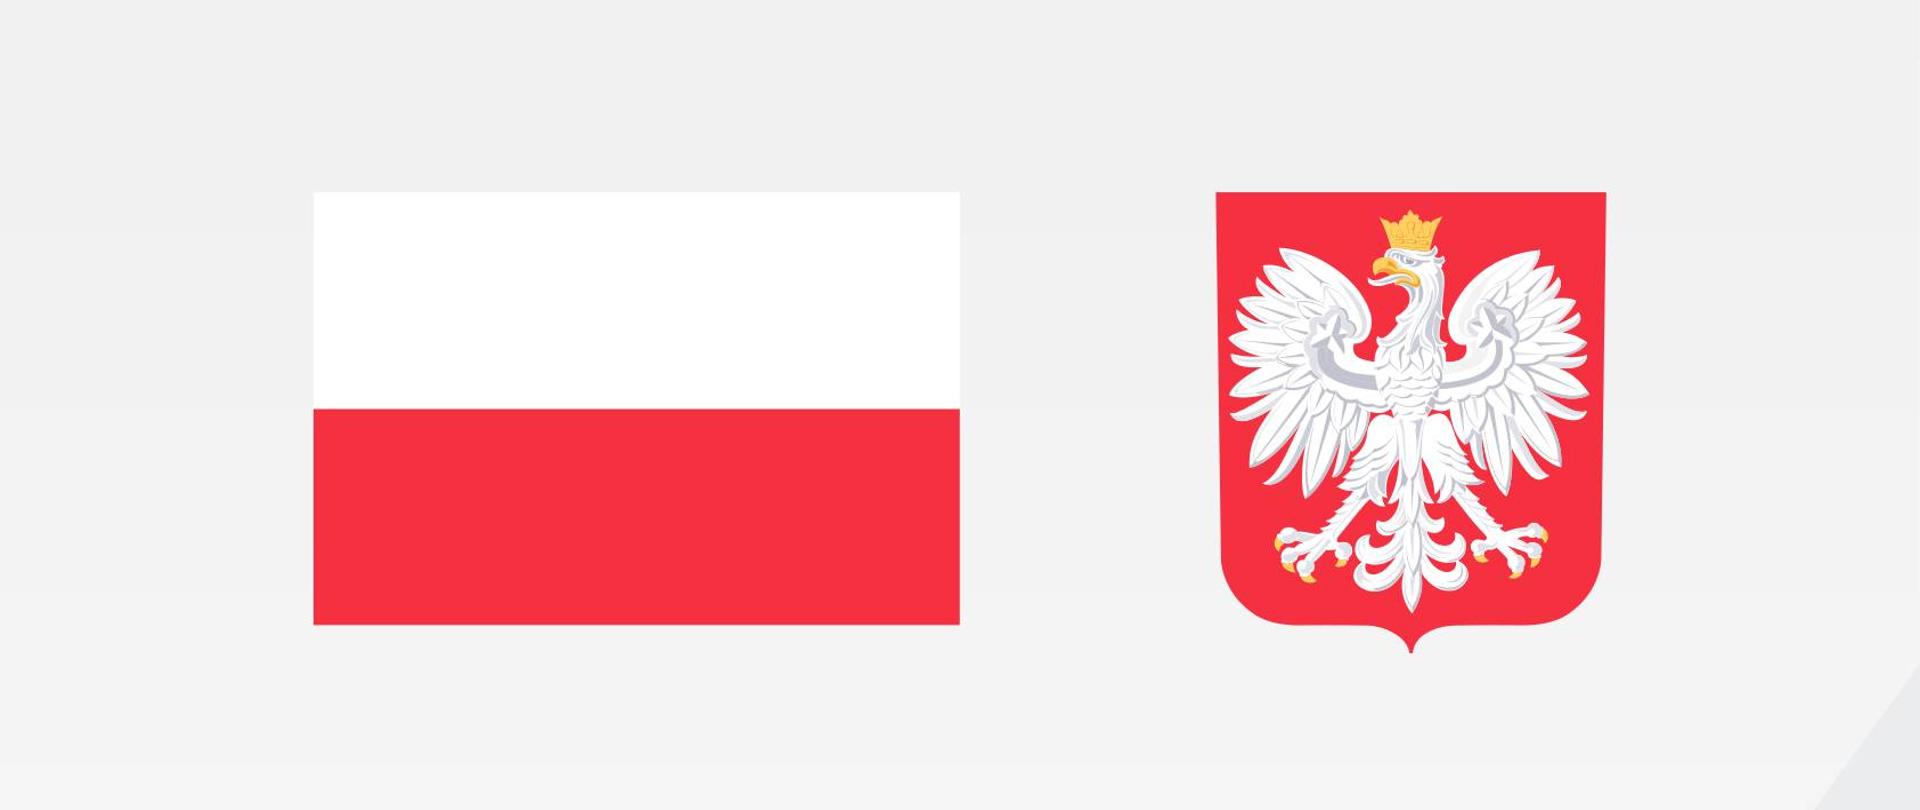 Plakat projektu: flaga i godło Polski, nazwa i wartość projektu